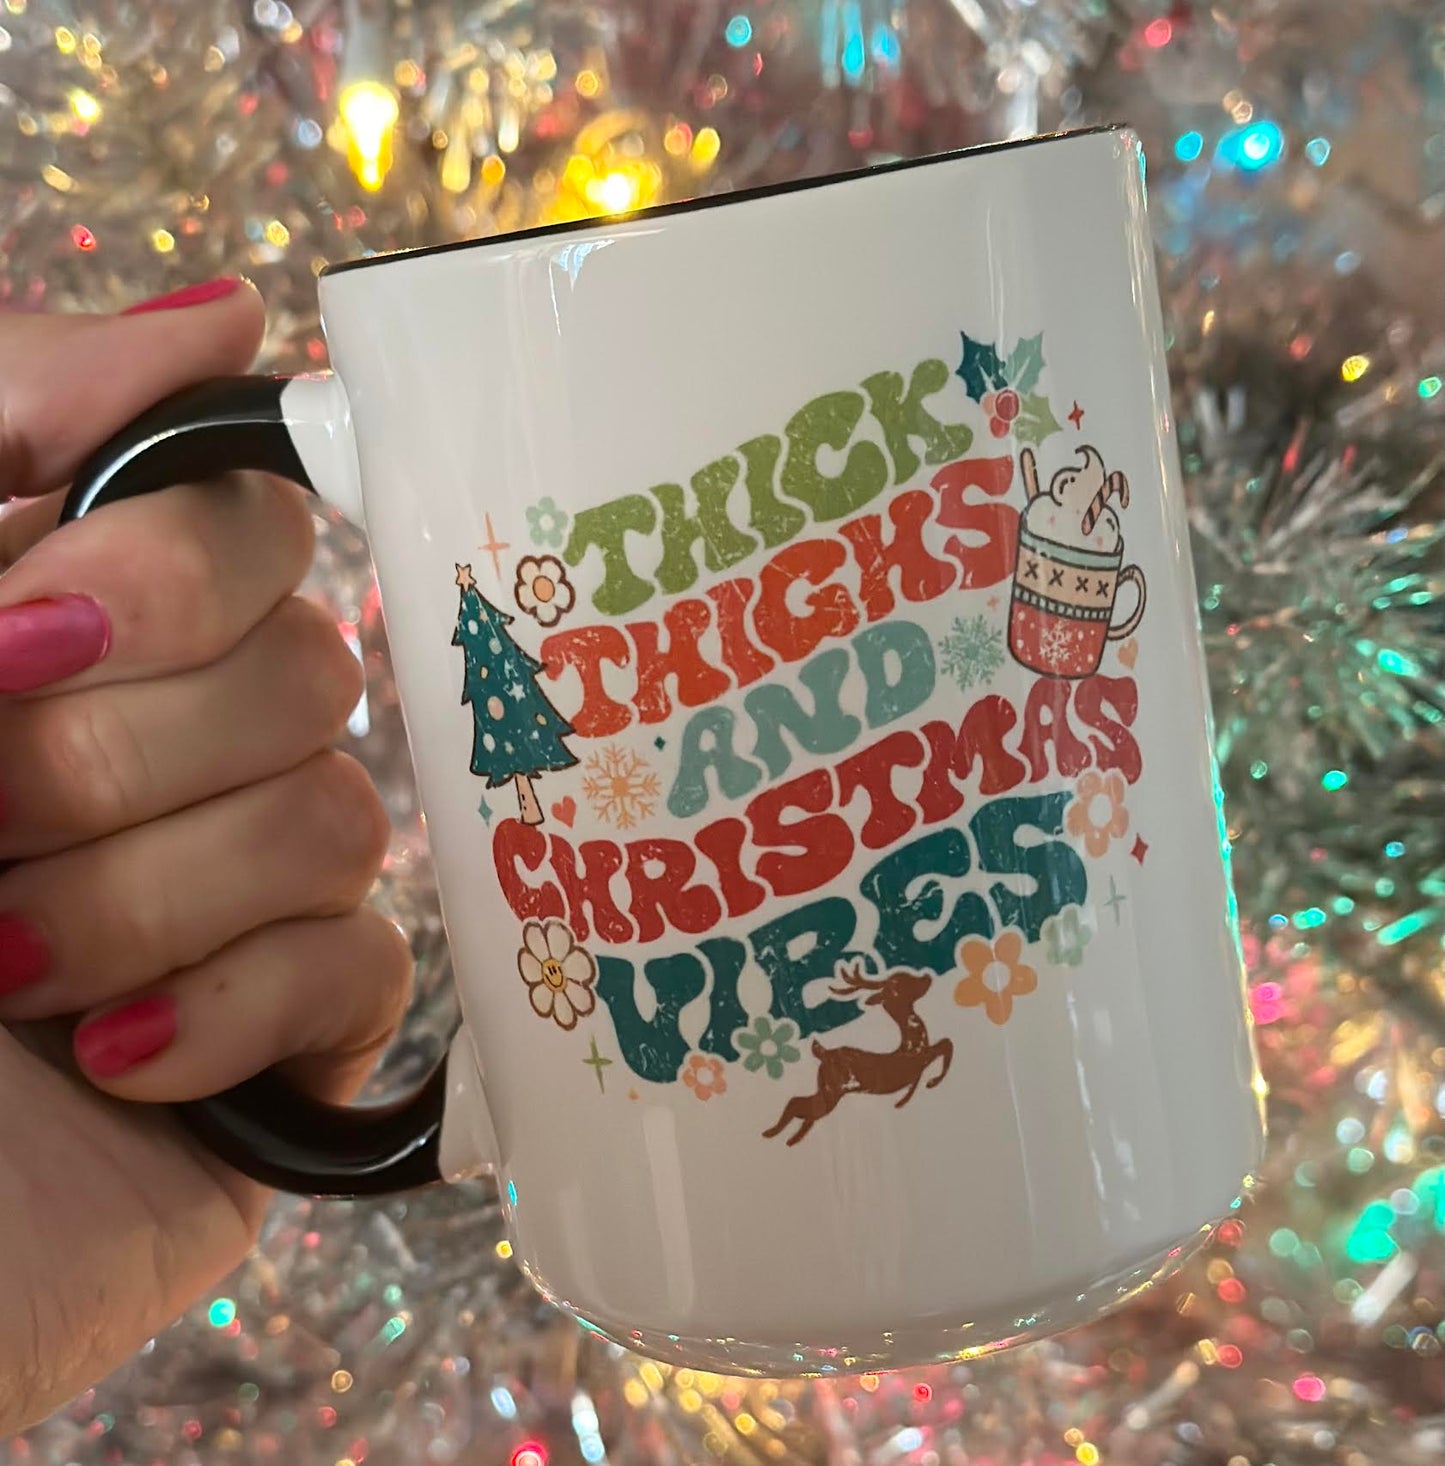 Thick Thighs & Christmas Vibes 15 oz Mug